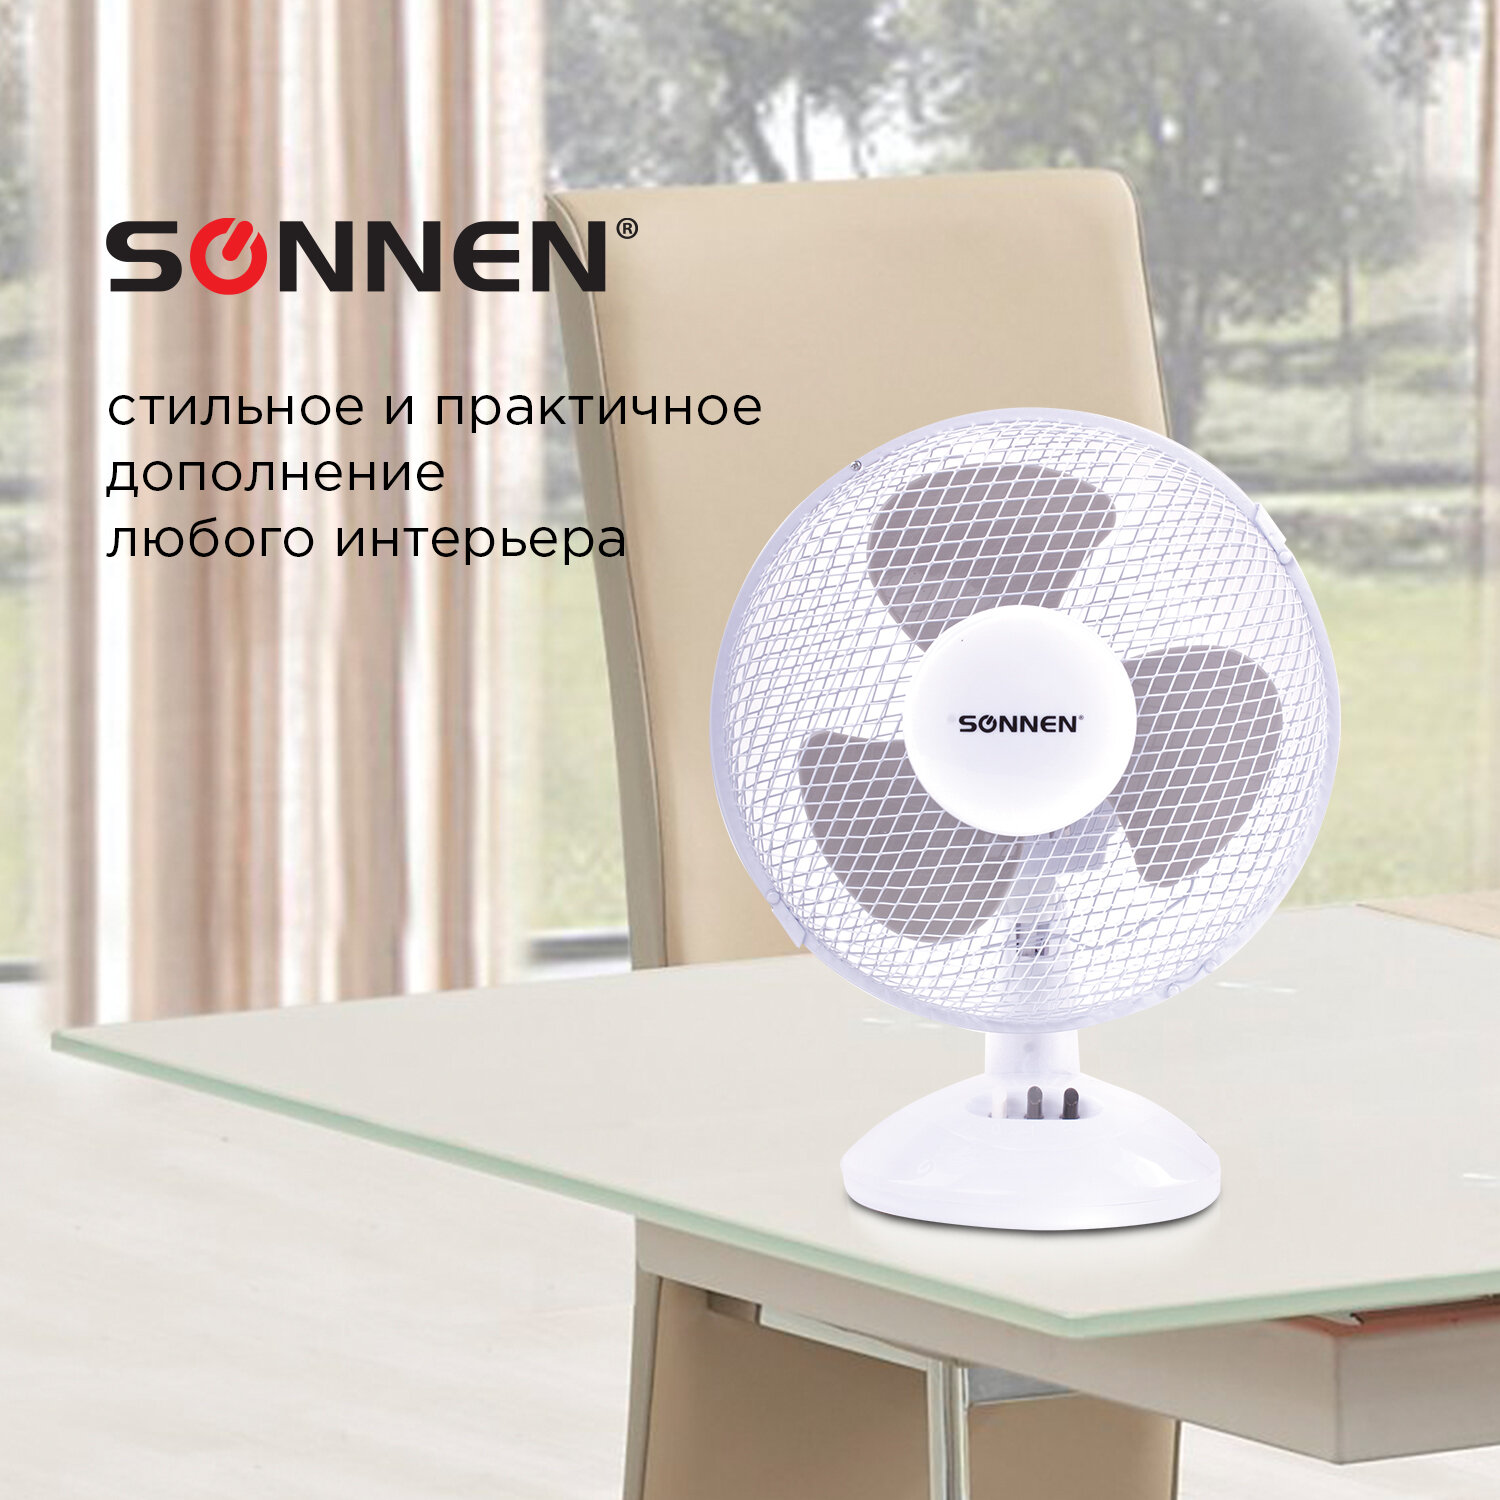 Sonnen Вентилятор настольный SONNEN FT23-B6, d=23 см, 25 Вт, на подставке, 2 скоростных режима, белый/серый, 451038